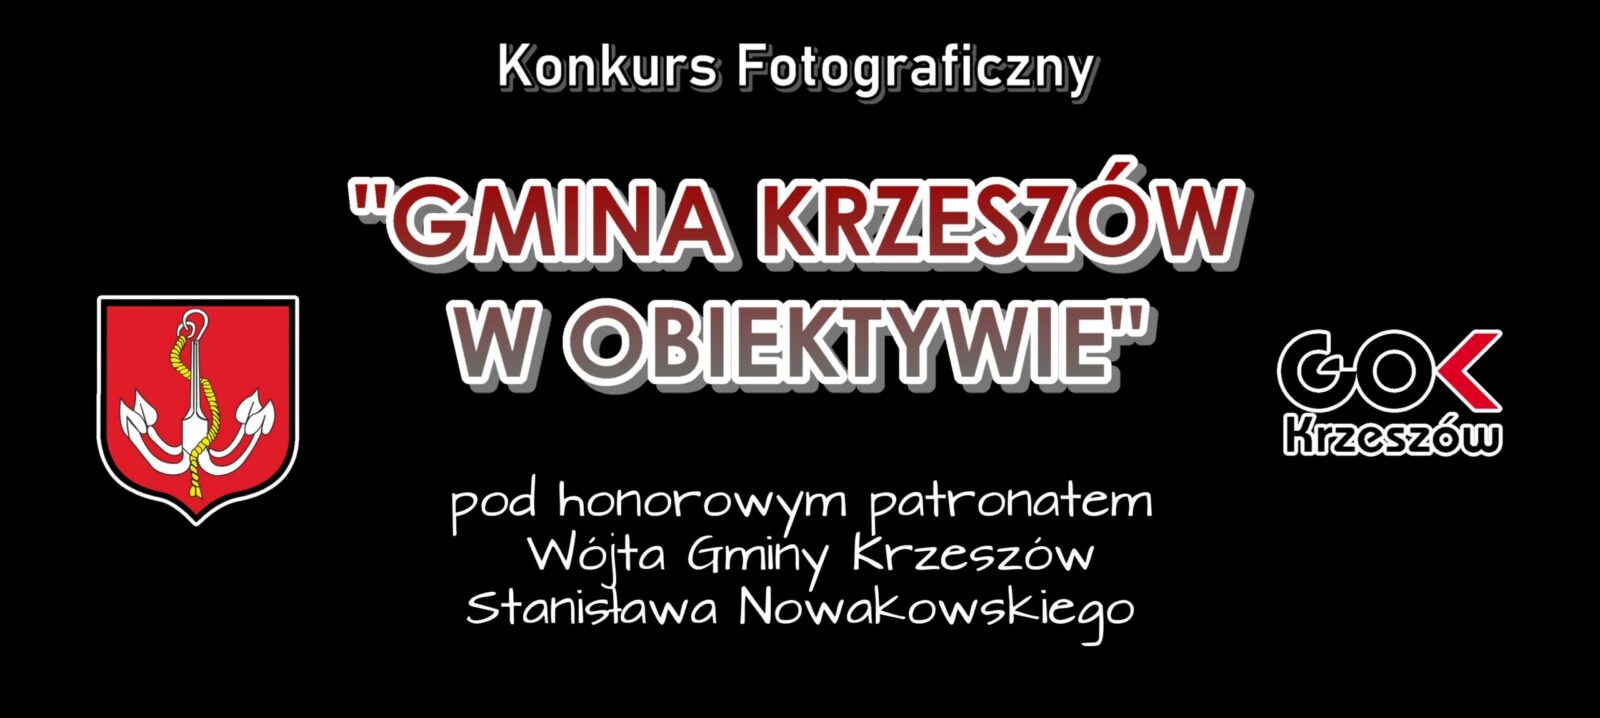 Wyniki konkursu fotograficznego “Gmina Krzeszów w obiektywie”